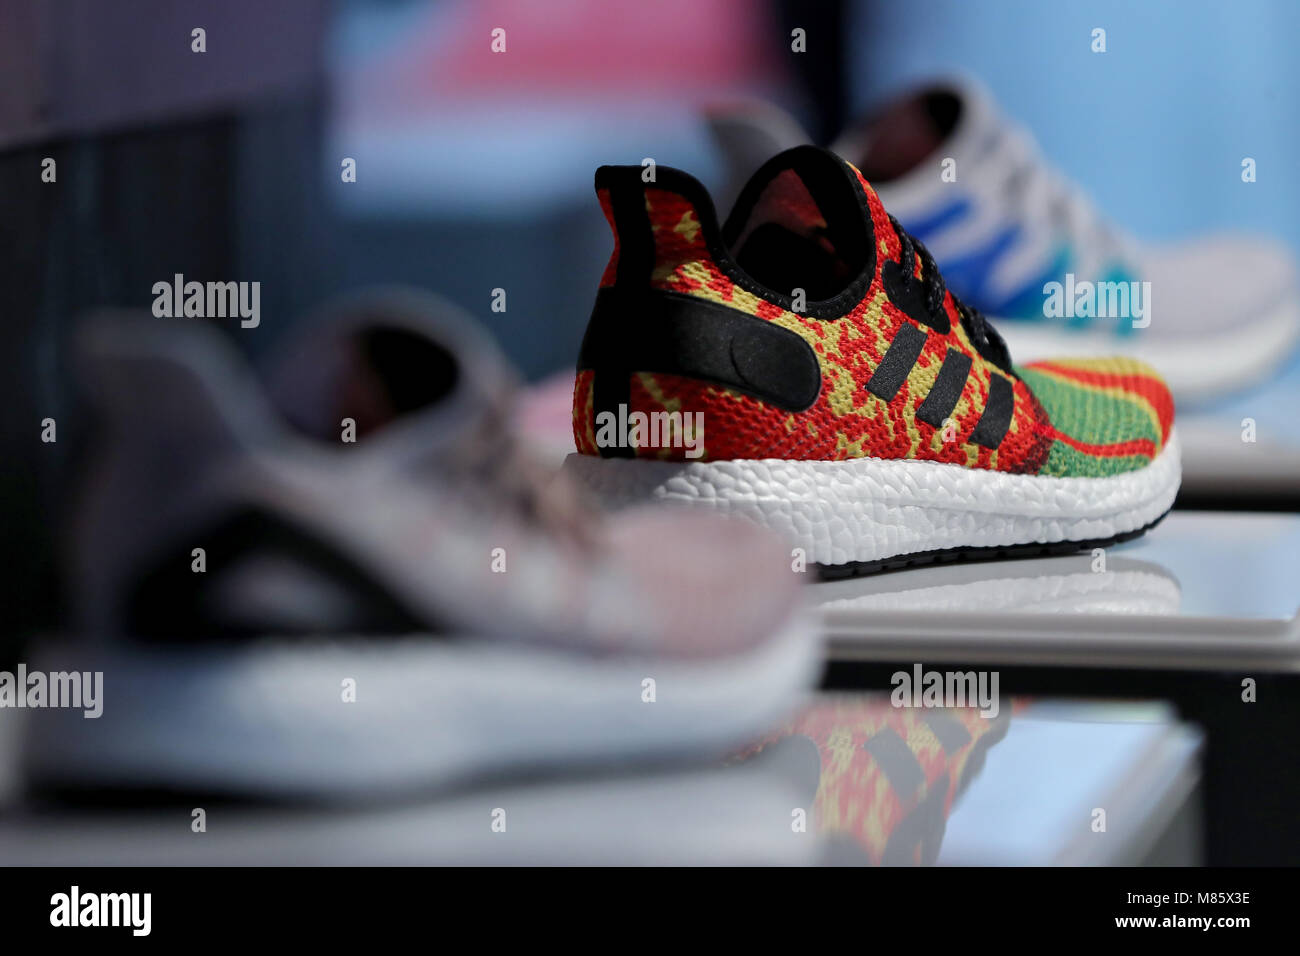 14 März 2018, Deutschland, Herzogenaurach: Adidas Schuhe, die in der  Geschwindigkeit Werk hergestellt wurden, sind auf dem Display während der  Bilanzpressekonferenz der adidas AG. Foto: Daniel Karmann/dpa  Stockfotografie - Alamy